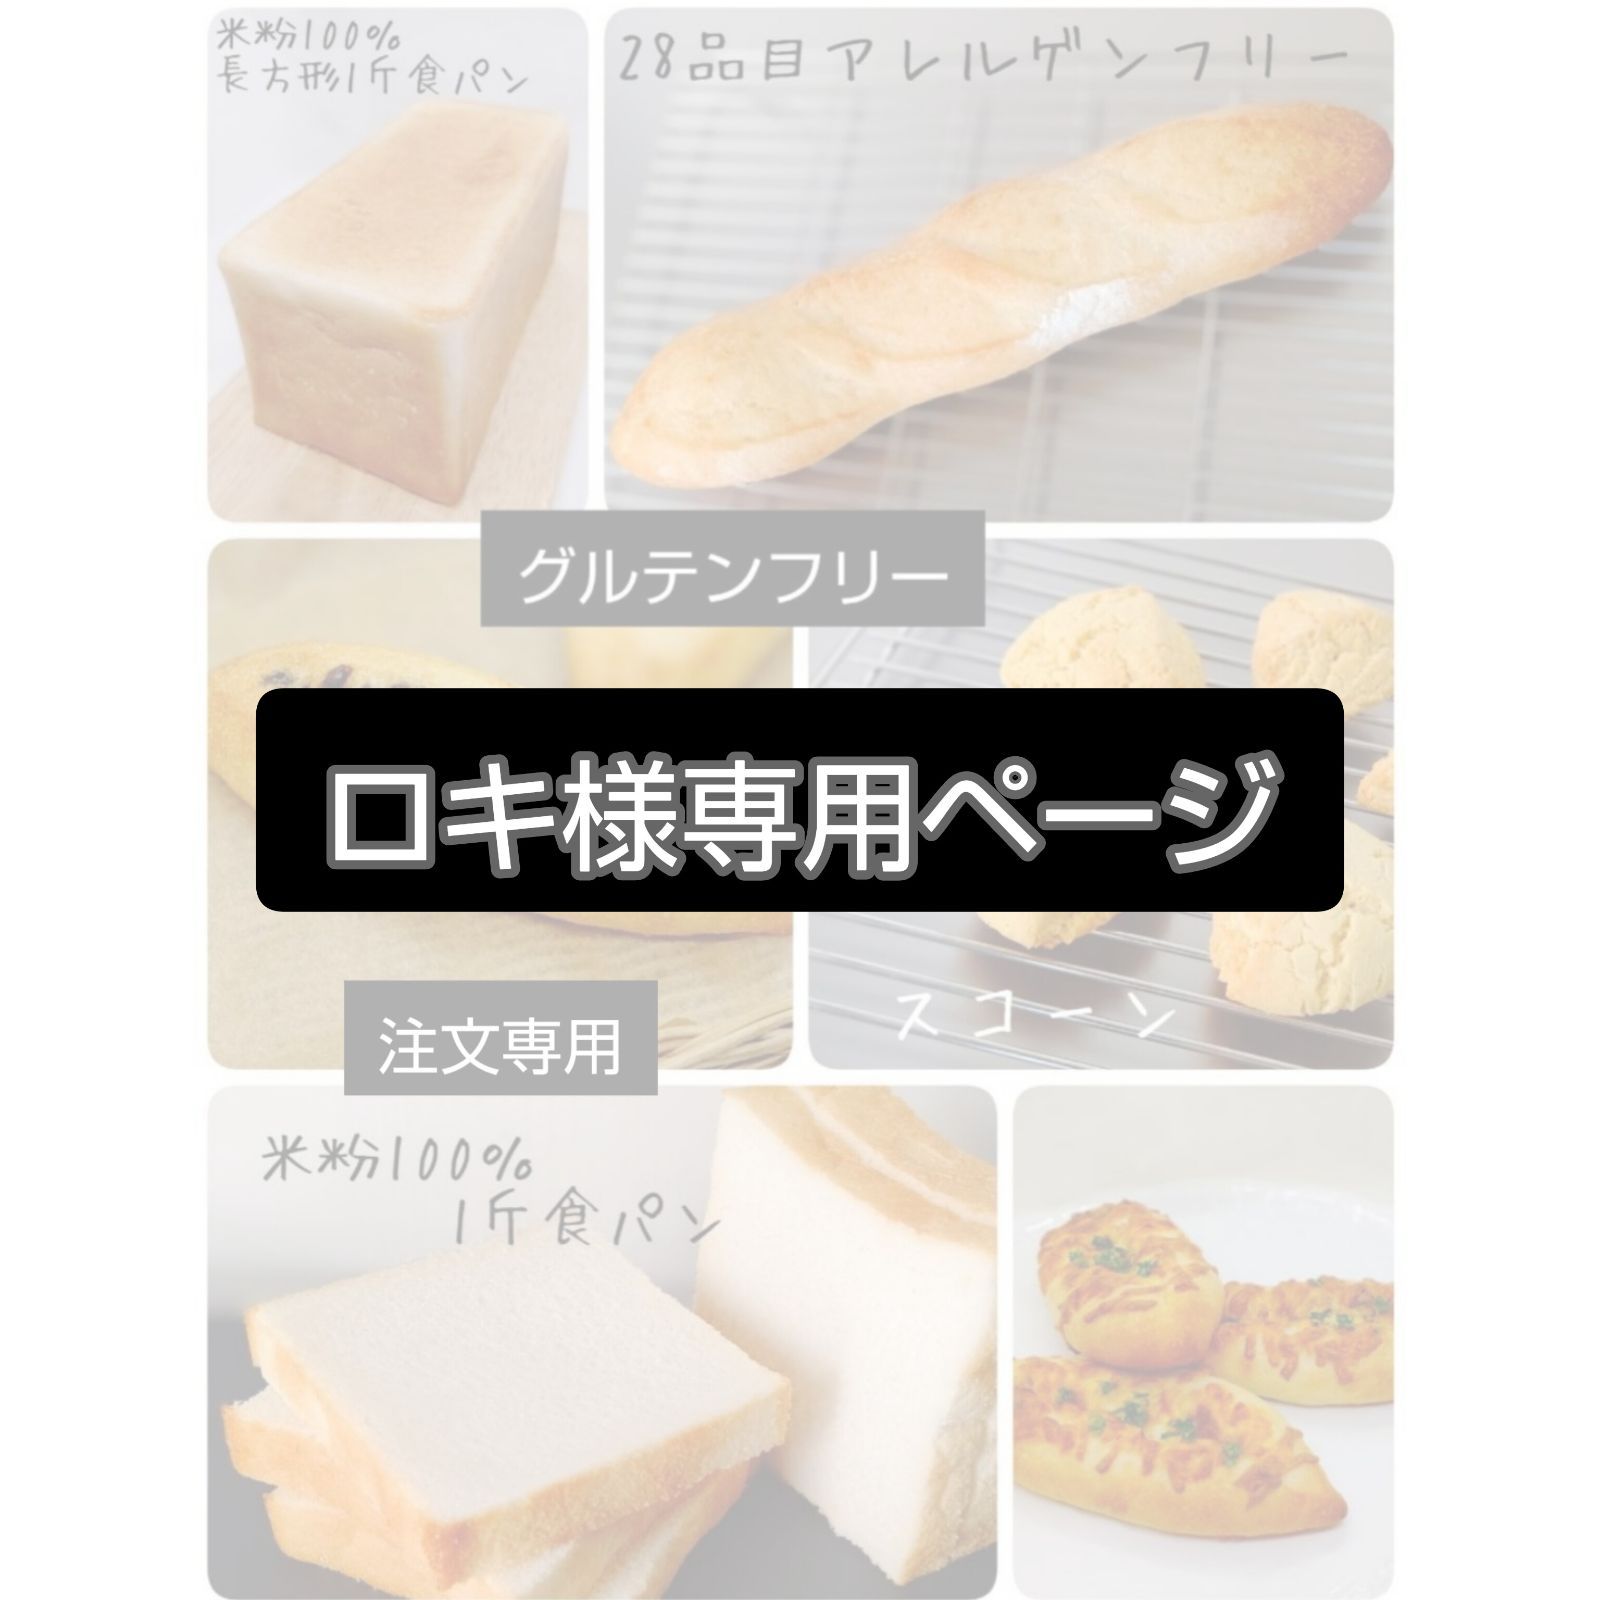 米粉パン ロキ様専用出品 - メルカリ